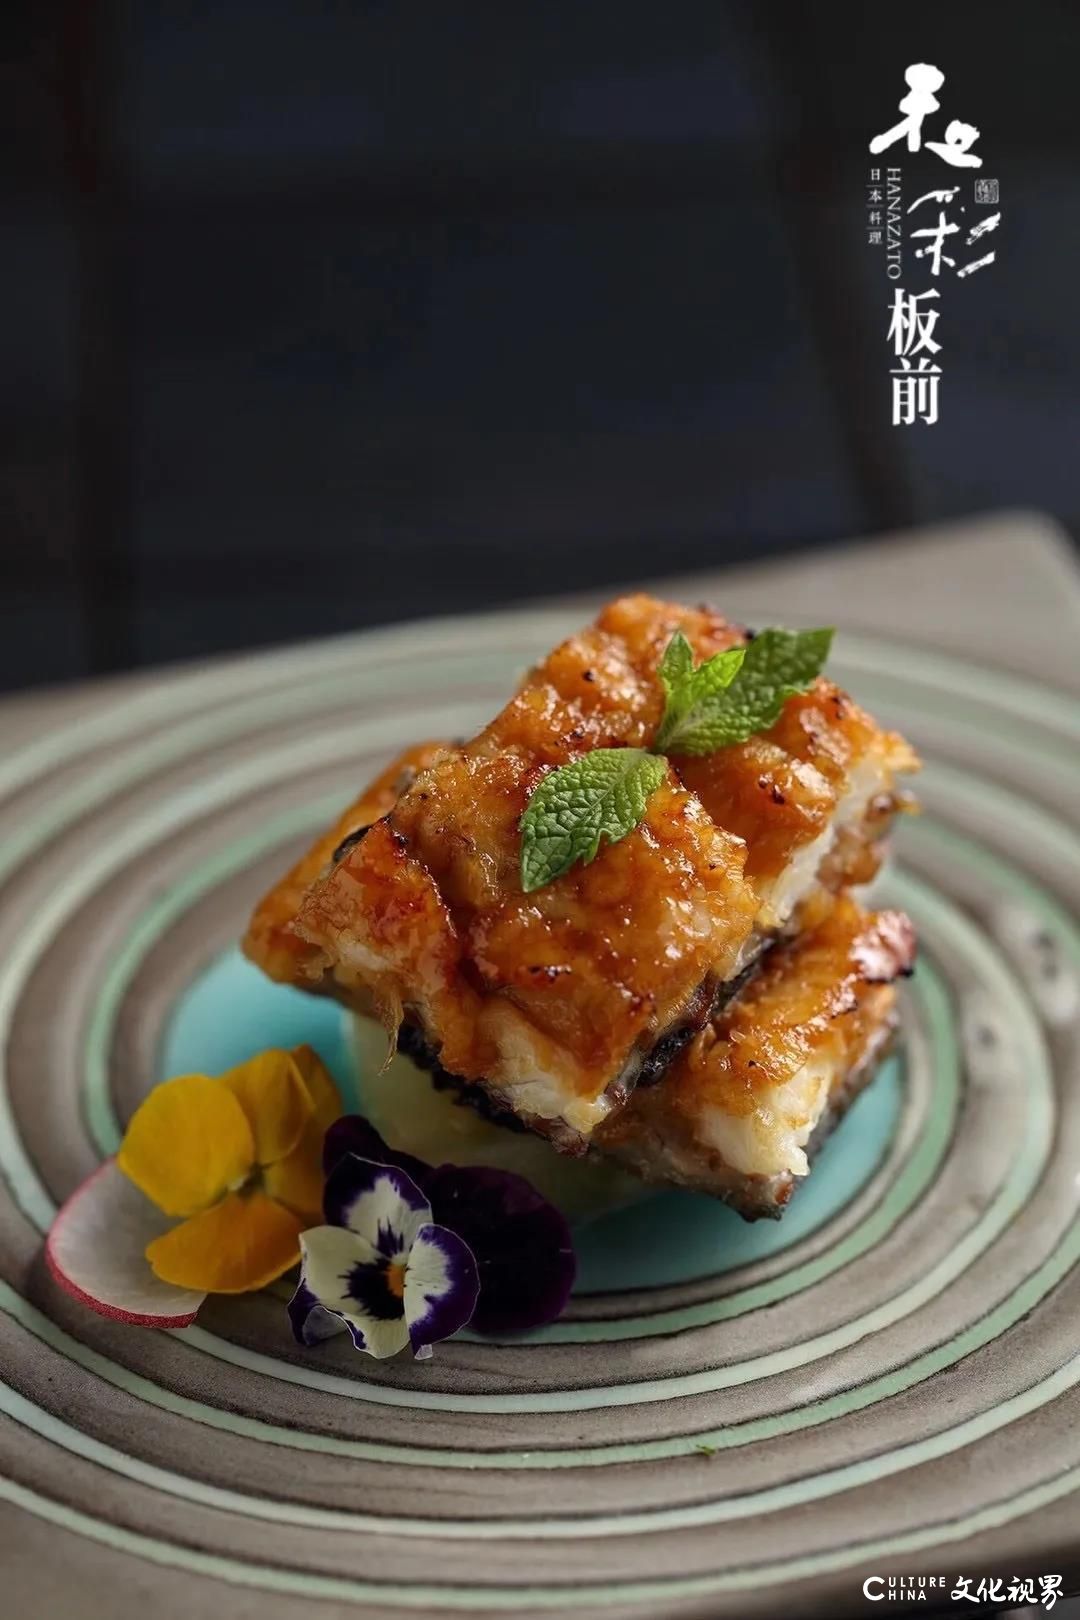 “蚝”门贵族“吉娜朵”+烤鮎鱼＆烤活鳗+阿拉斯加帝王蟹——这个秋季，济南和彩板前料理给你最好的食材滋补，最佳的浪漫体验